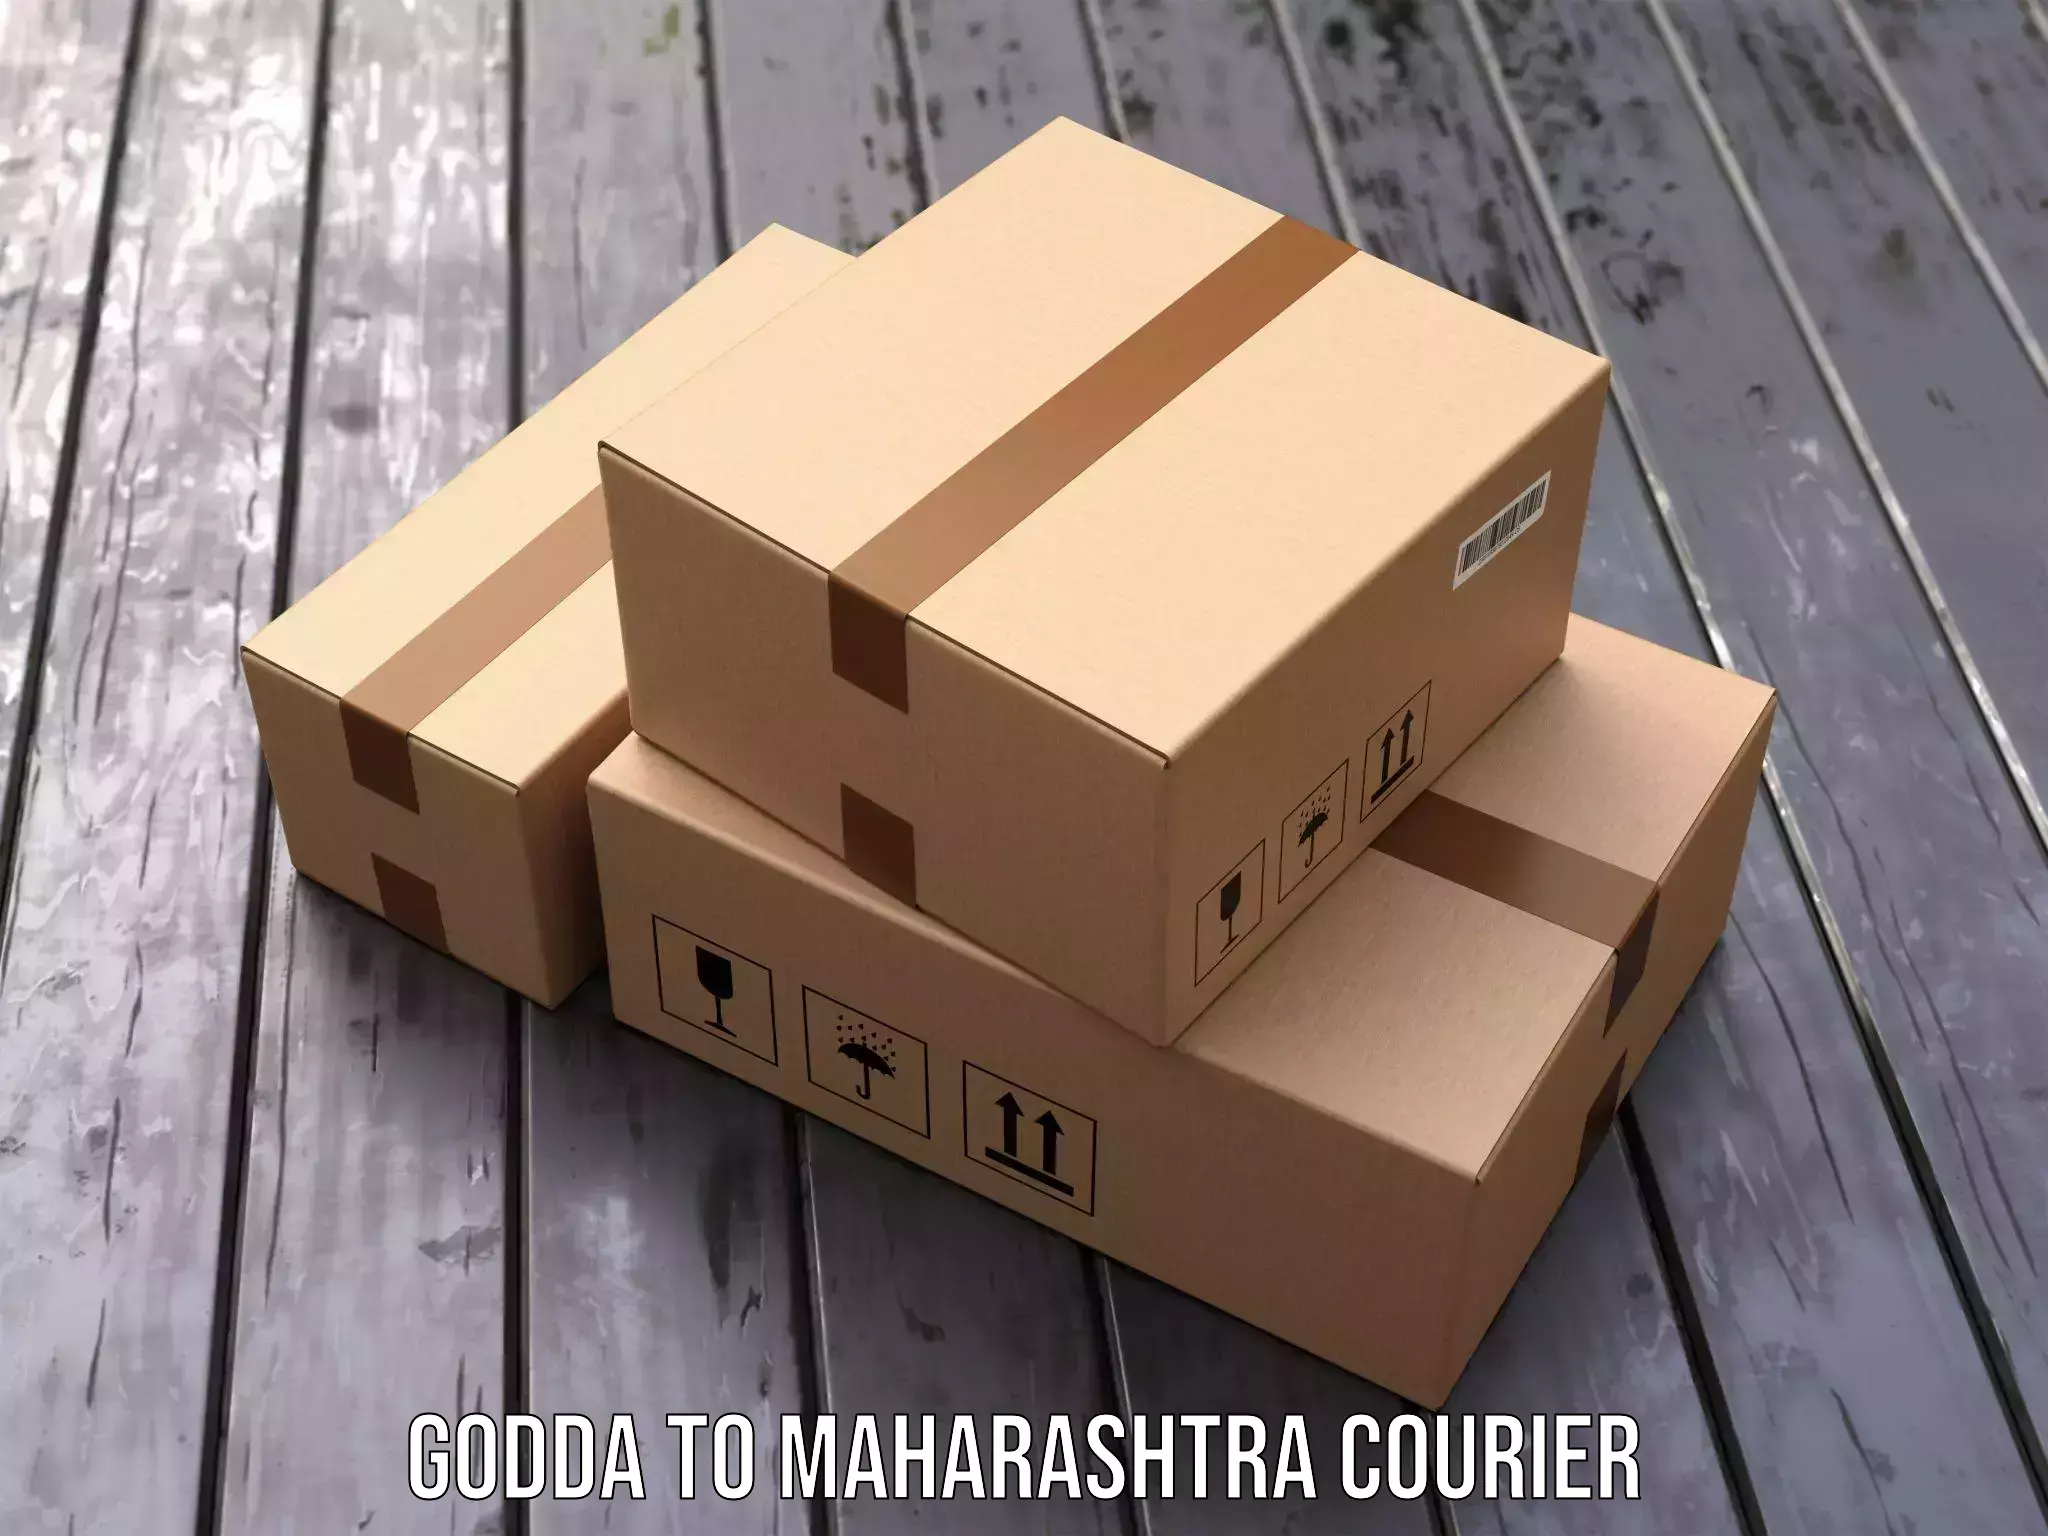 Automated parcel services Godda to Maharashtra